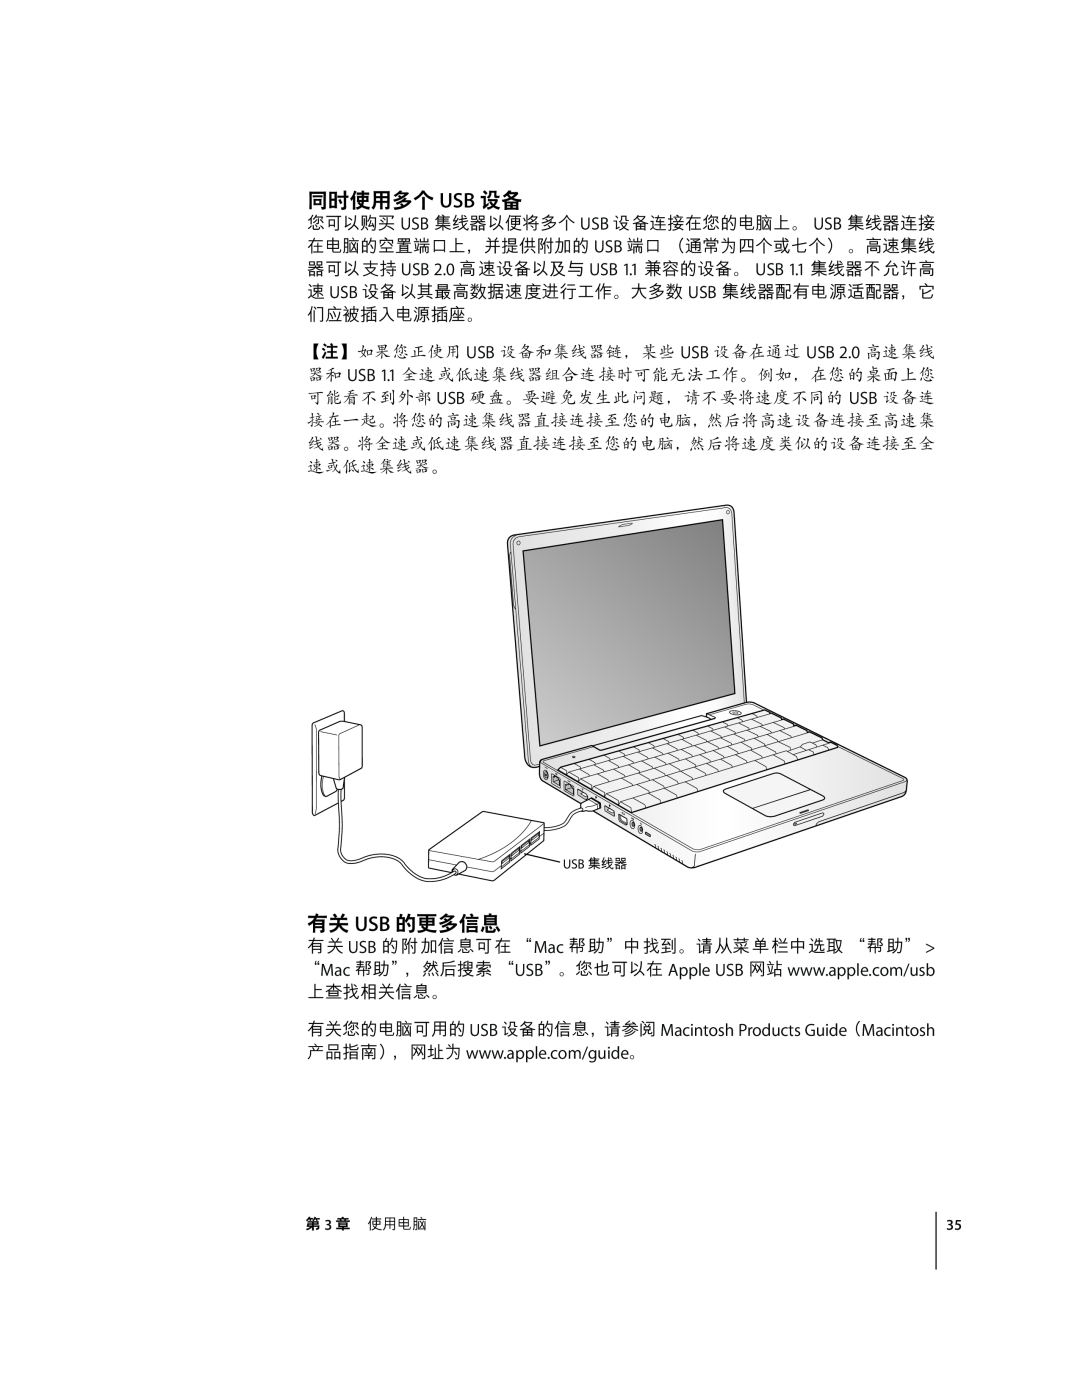 Apple G4 12 manual öÁ÷/ USB ˜, ef USB -g÷% 